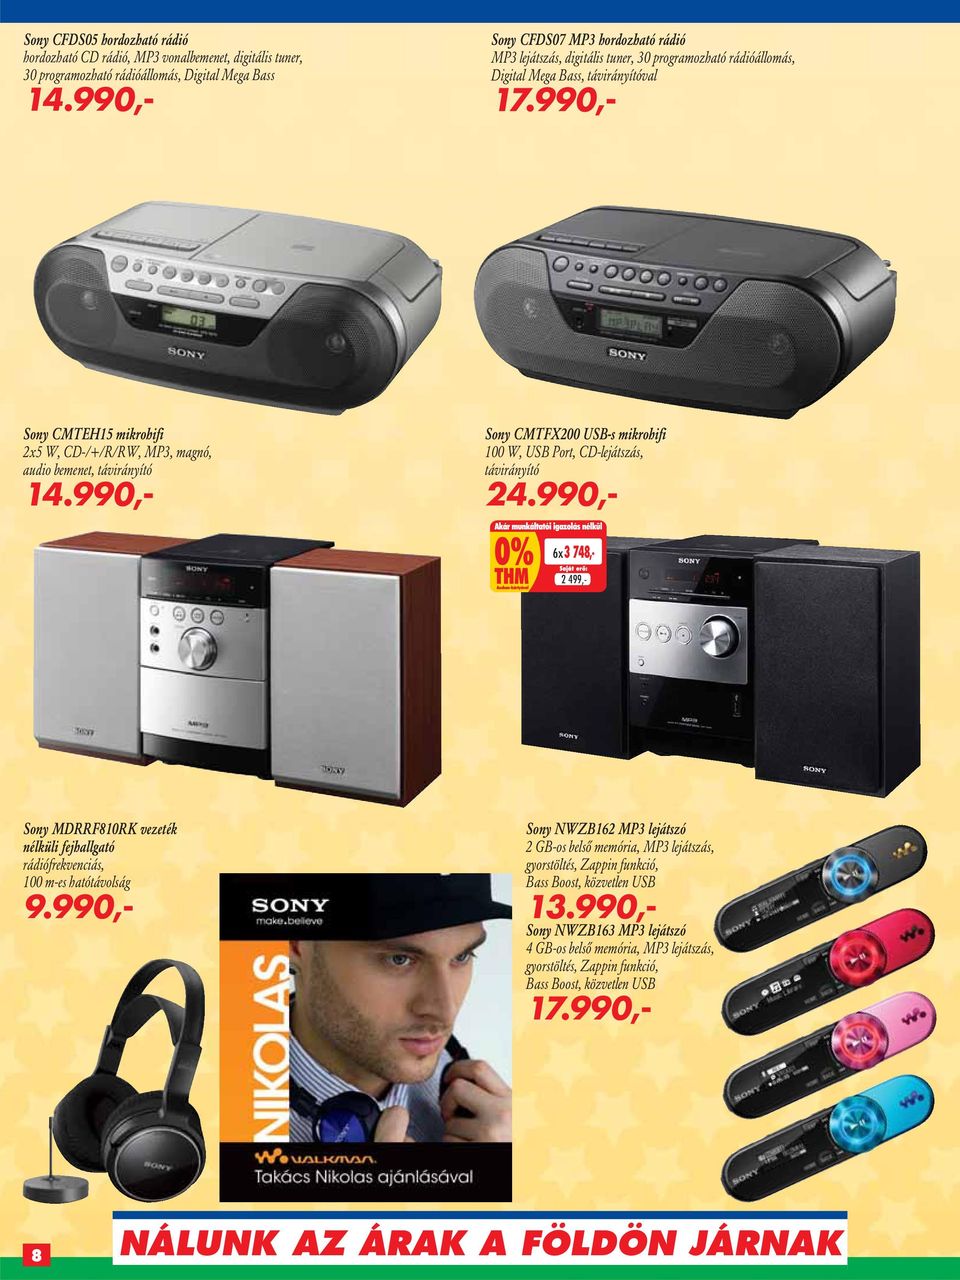 990,- Sony CMTEH15 mikrohifi 2x5 W, CD-/+/R/RW, MP3, magnó, audio bemenet, távirányító 14.990,- Sony CMTFX200 USB-s mikrohifi 100 W, USB Port, CD-lejátszás, távirányító 24.